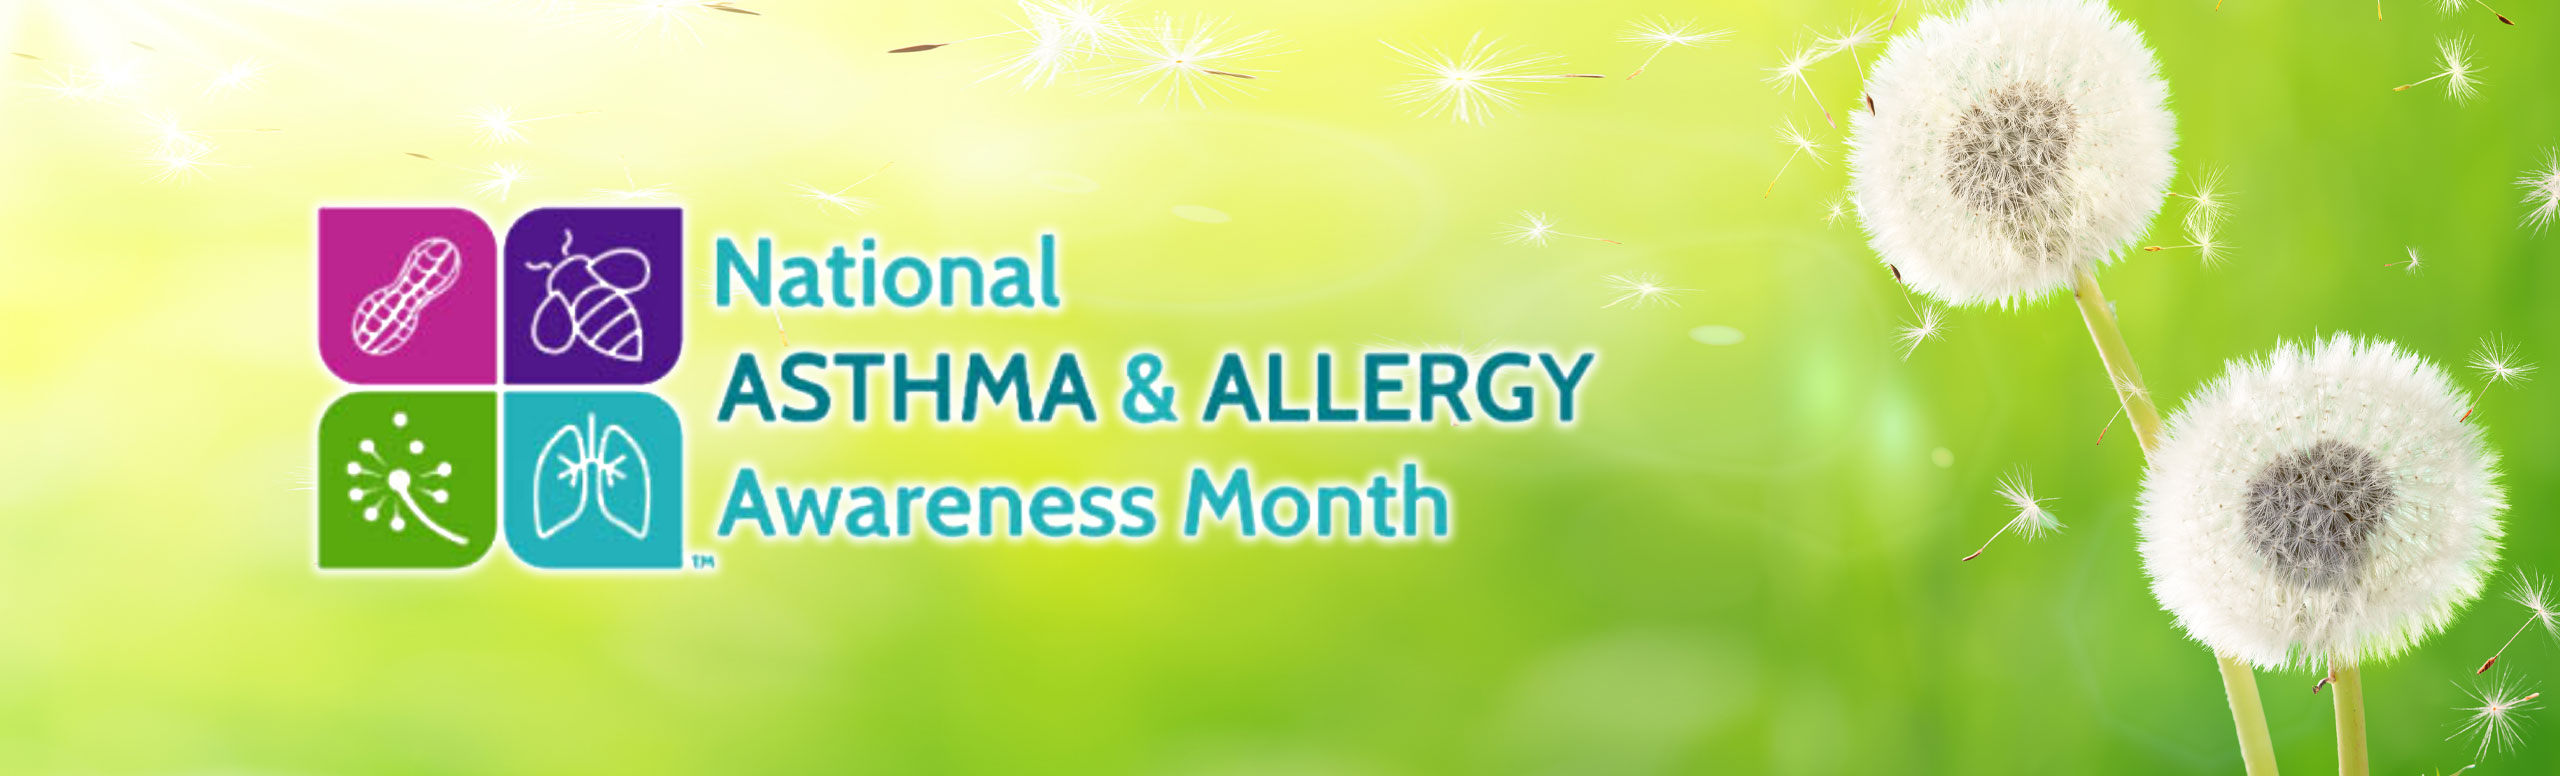 National ASHTMA & ALLERGY 
Awareness Month